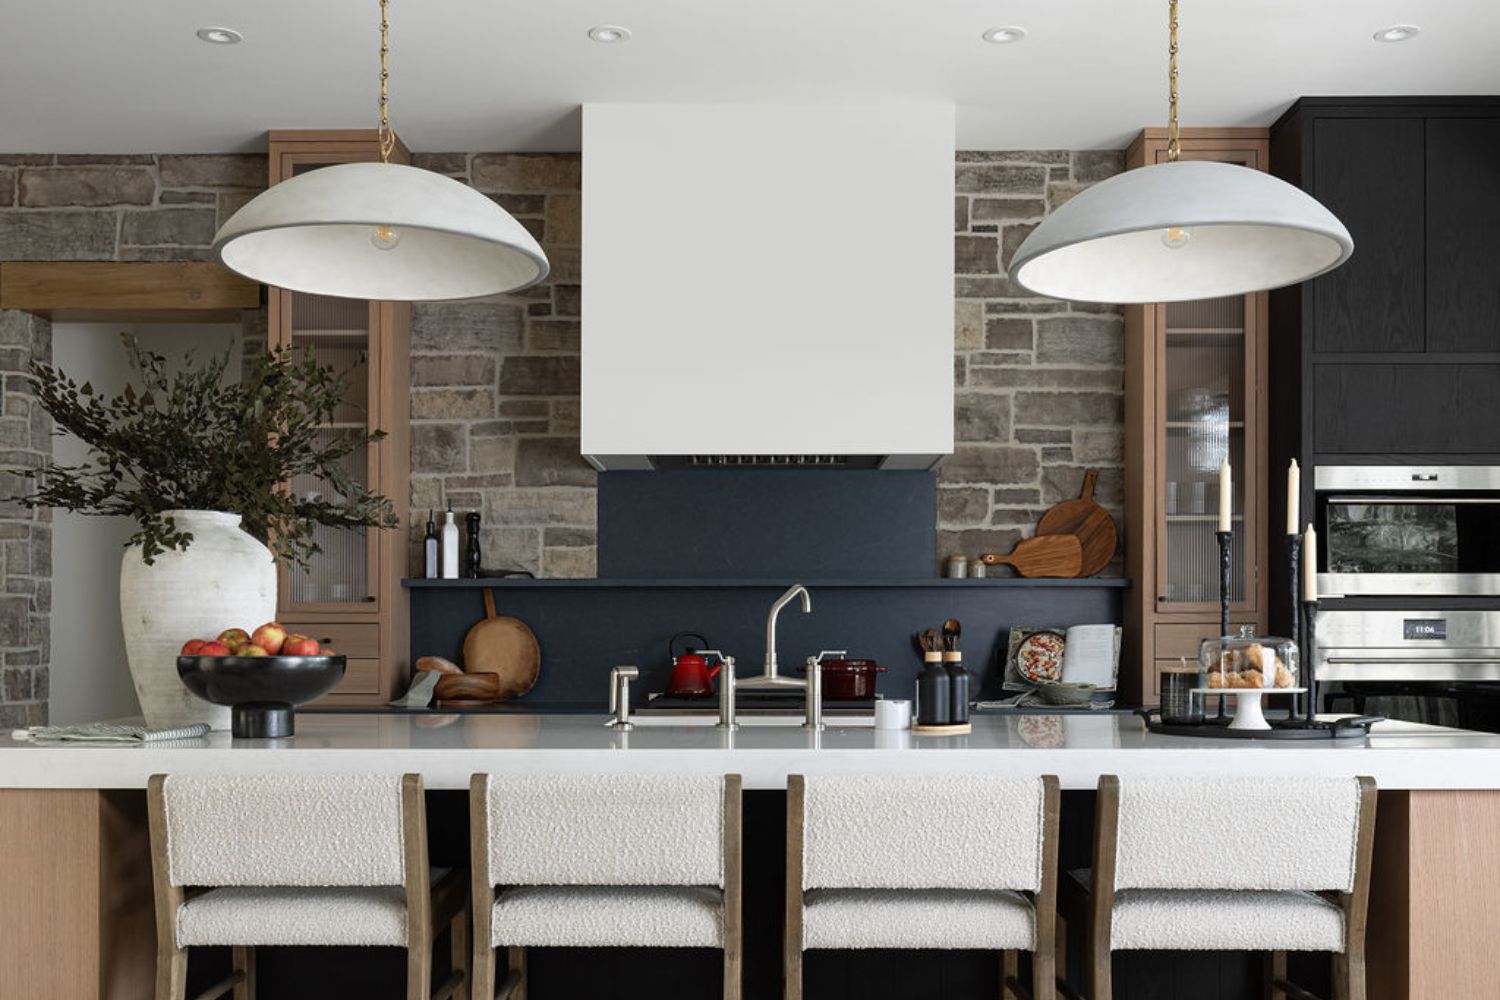 Project Fieldale: Overhead lighting in modern kitchen remodel